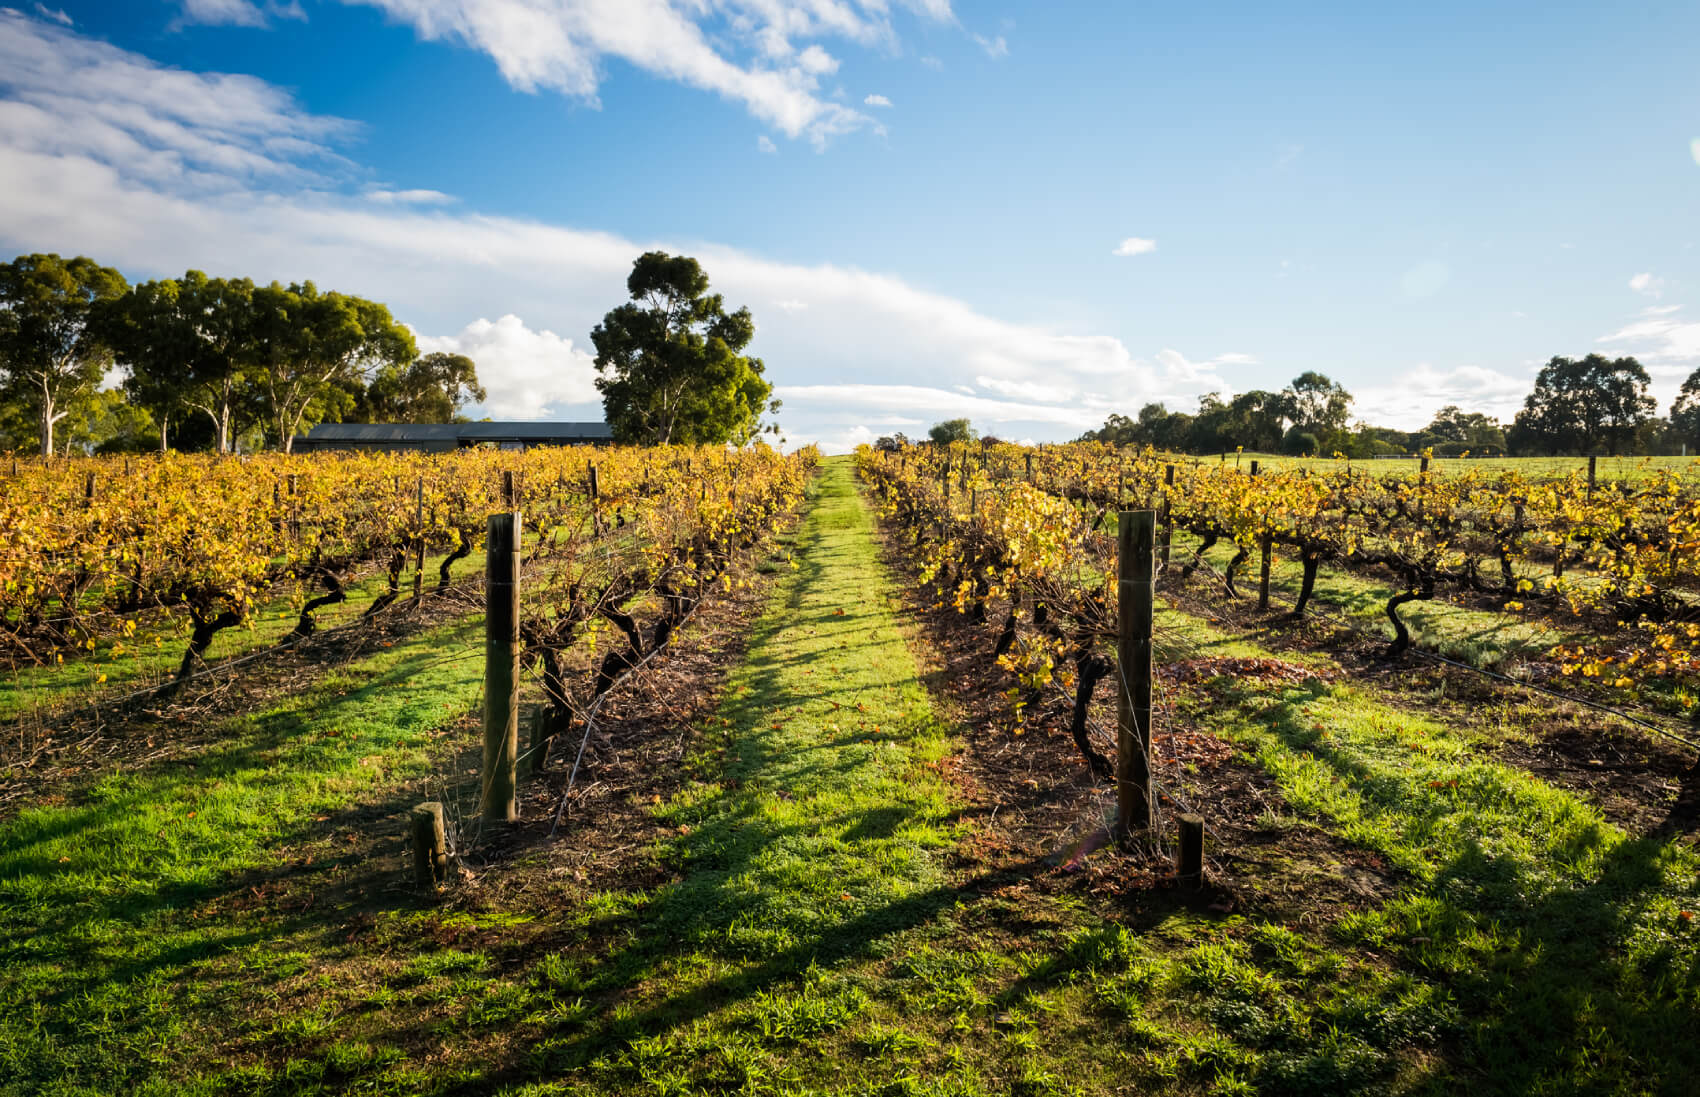 Swan Valley vineyard in Perth, Australia